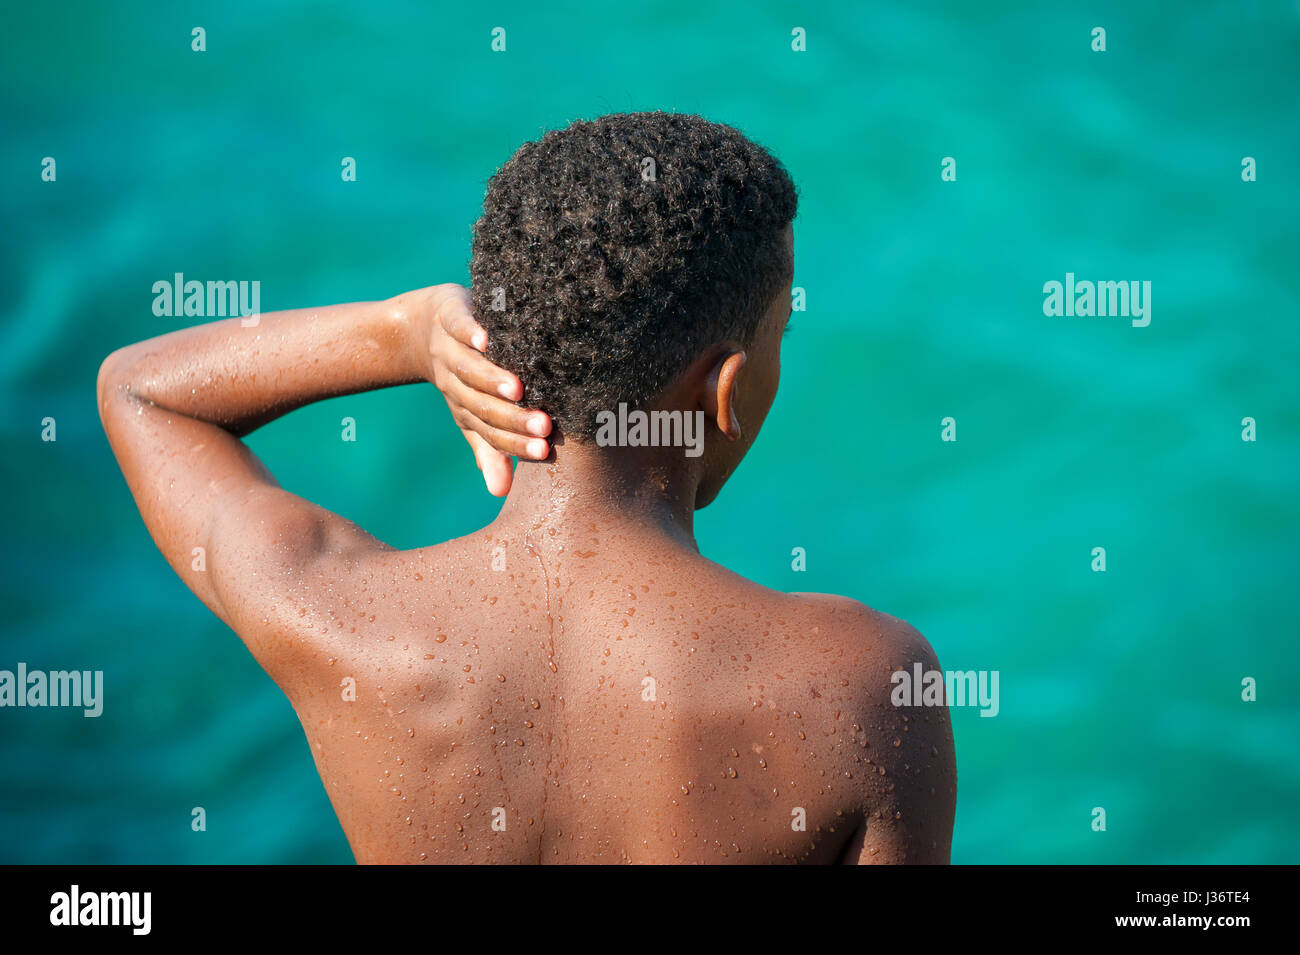 L'Avana - Giugno 2011: giovane uomo cubano attende il suo turno di tuffarsi in acqua in una piscina foro sul Malecon waterfront. Foto Stock